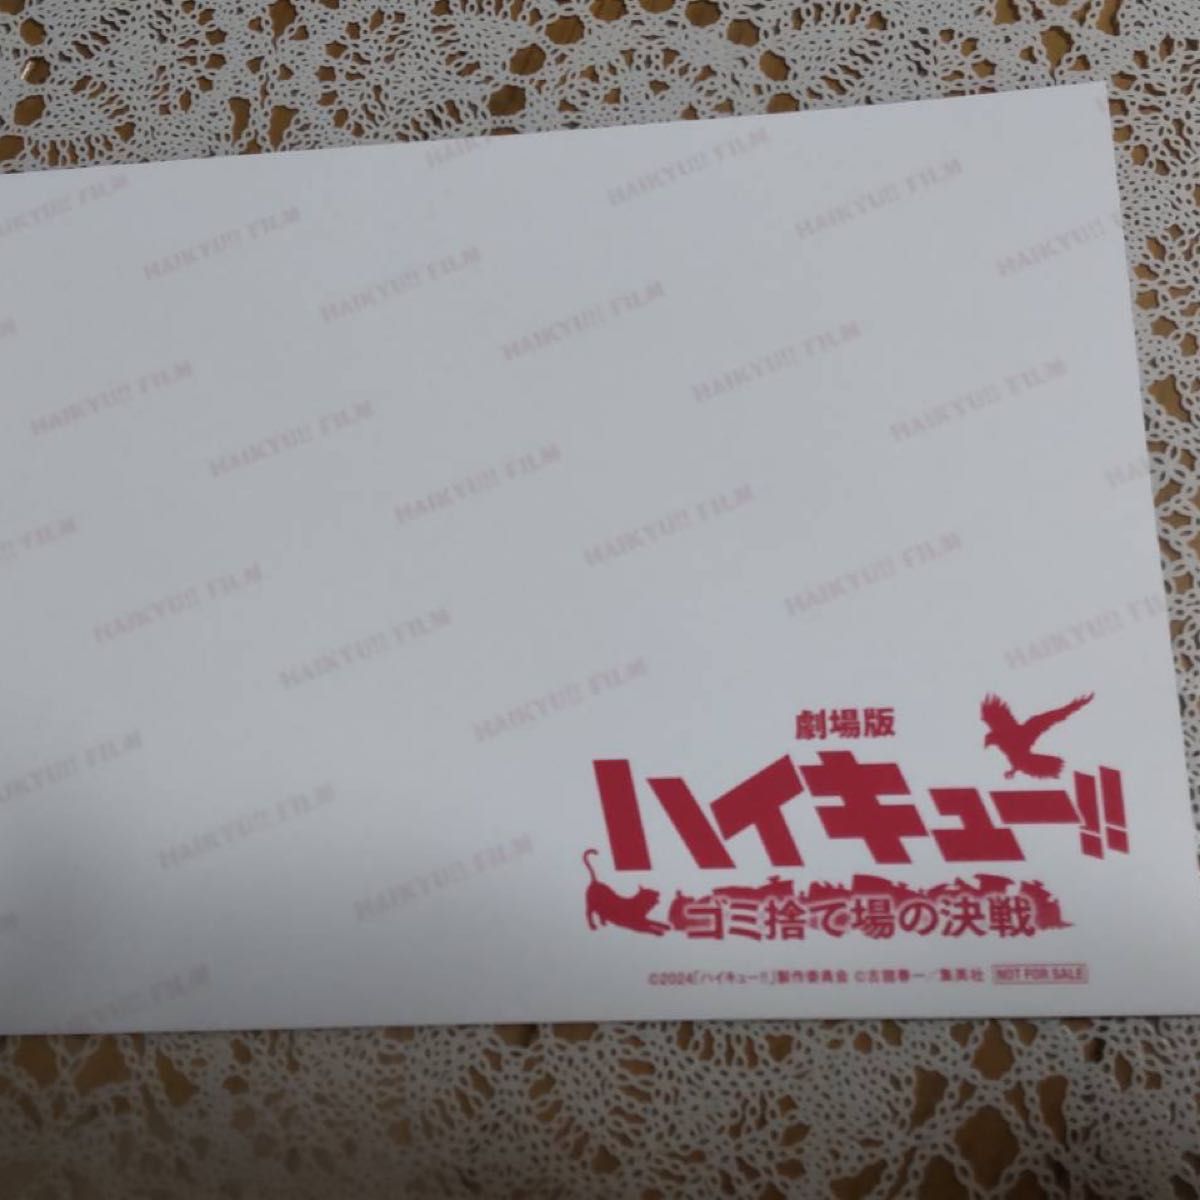 ハイキュー ゴミ捨て場の決戦 劇場版 入場者特典ポストカード